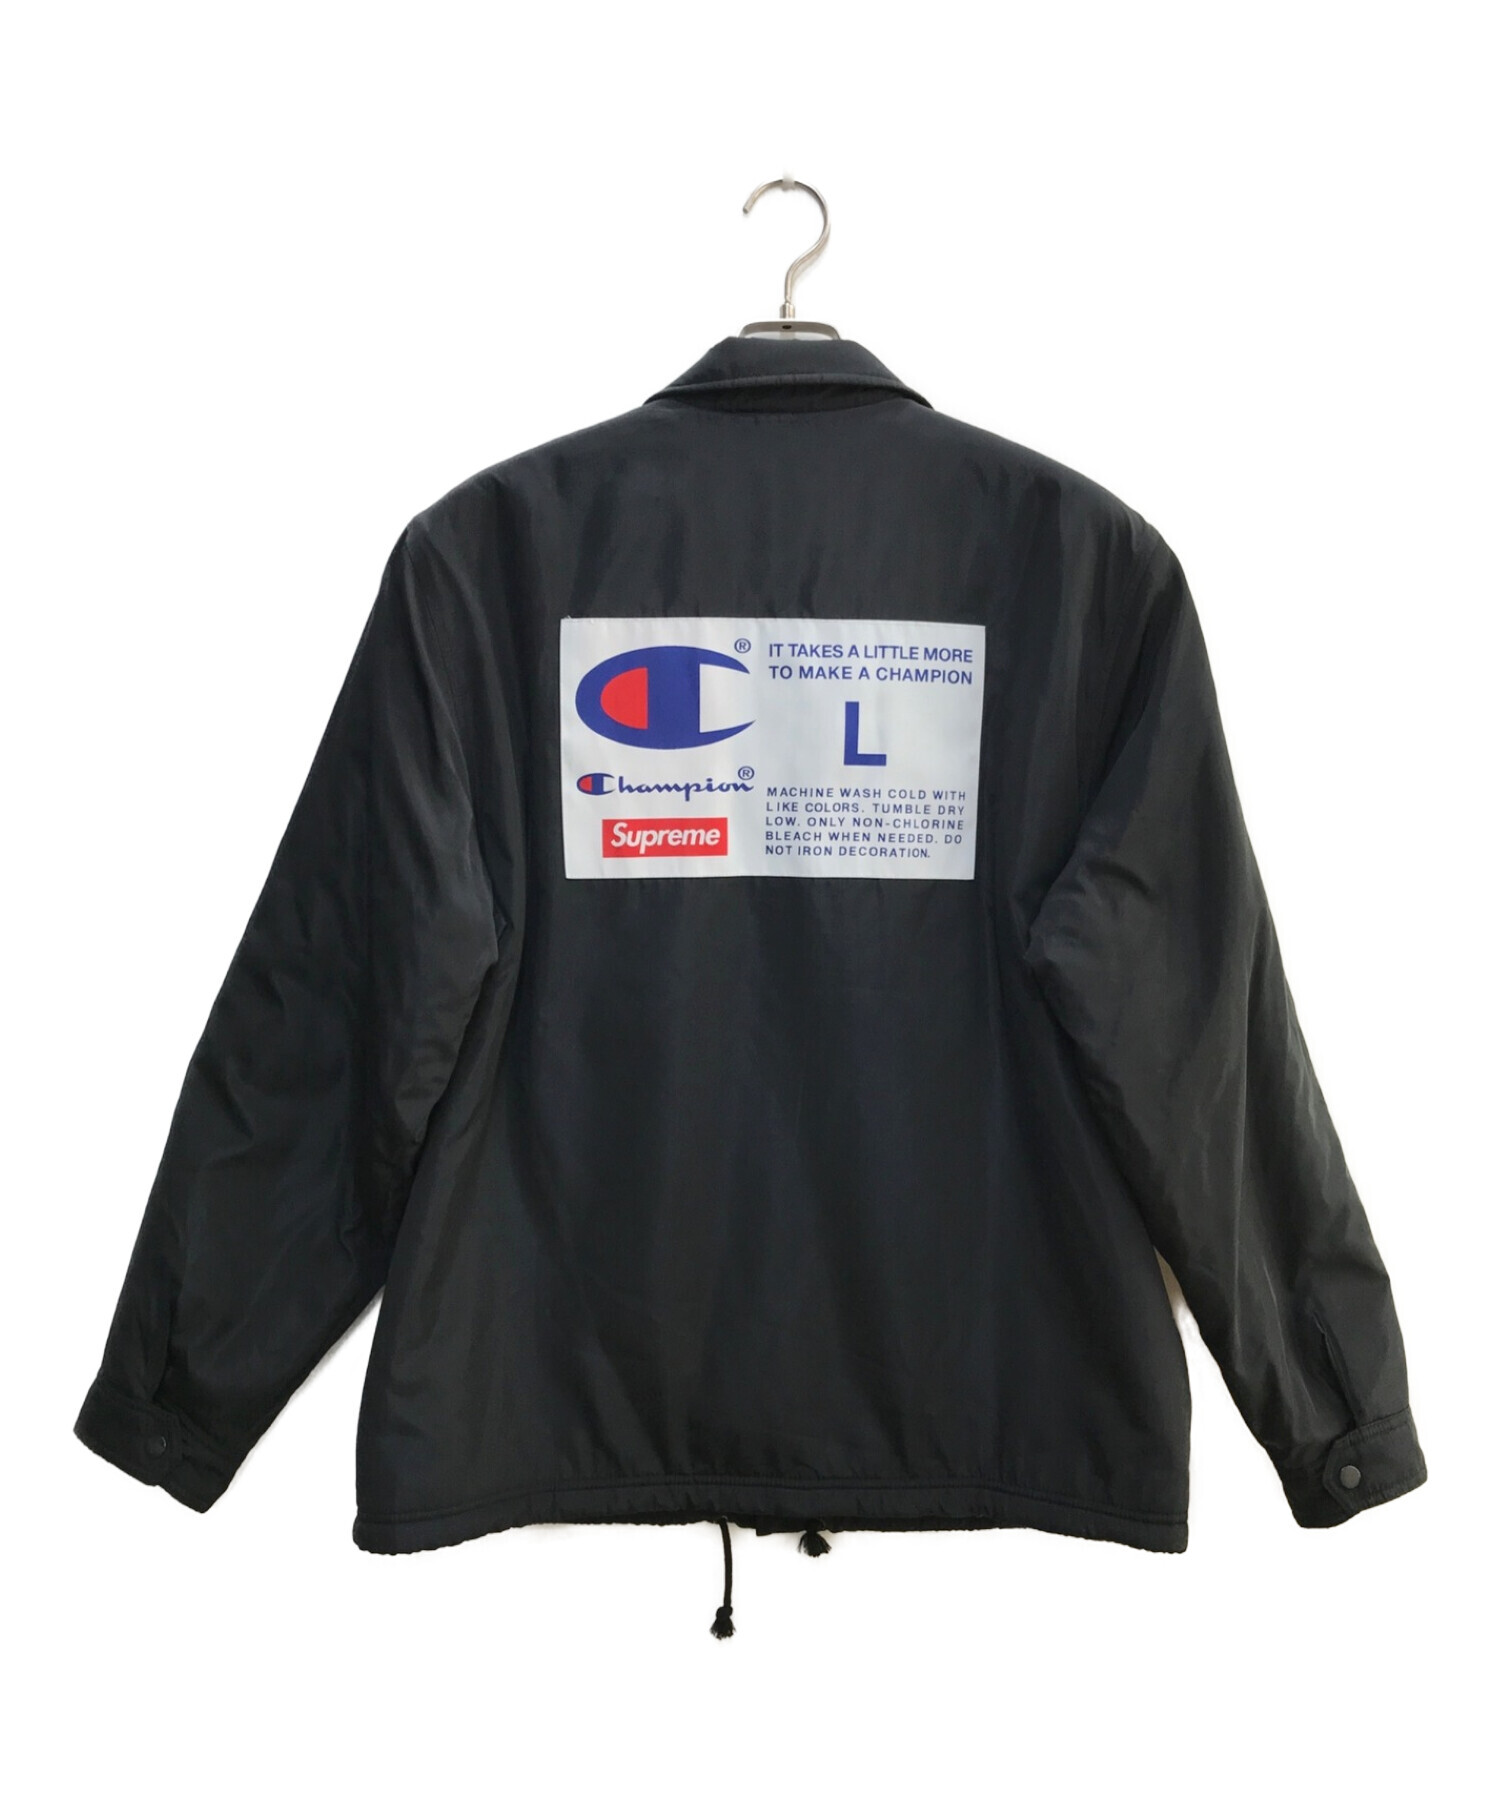 SUPREME (シュプリーム) Champion (チャンピオン) Label Coaches Jacket ブラック サイズ:L